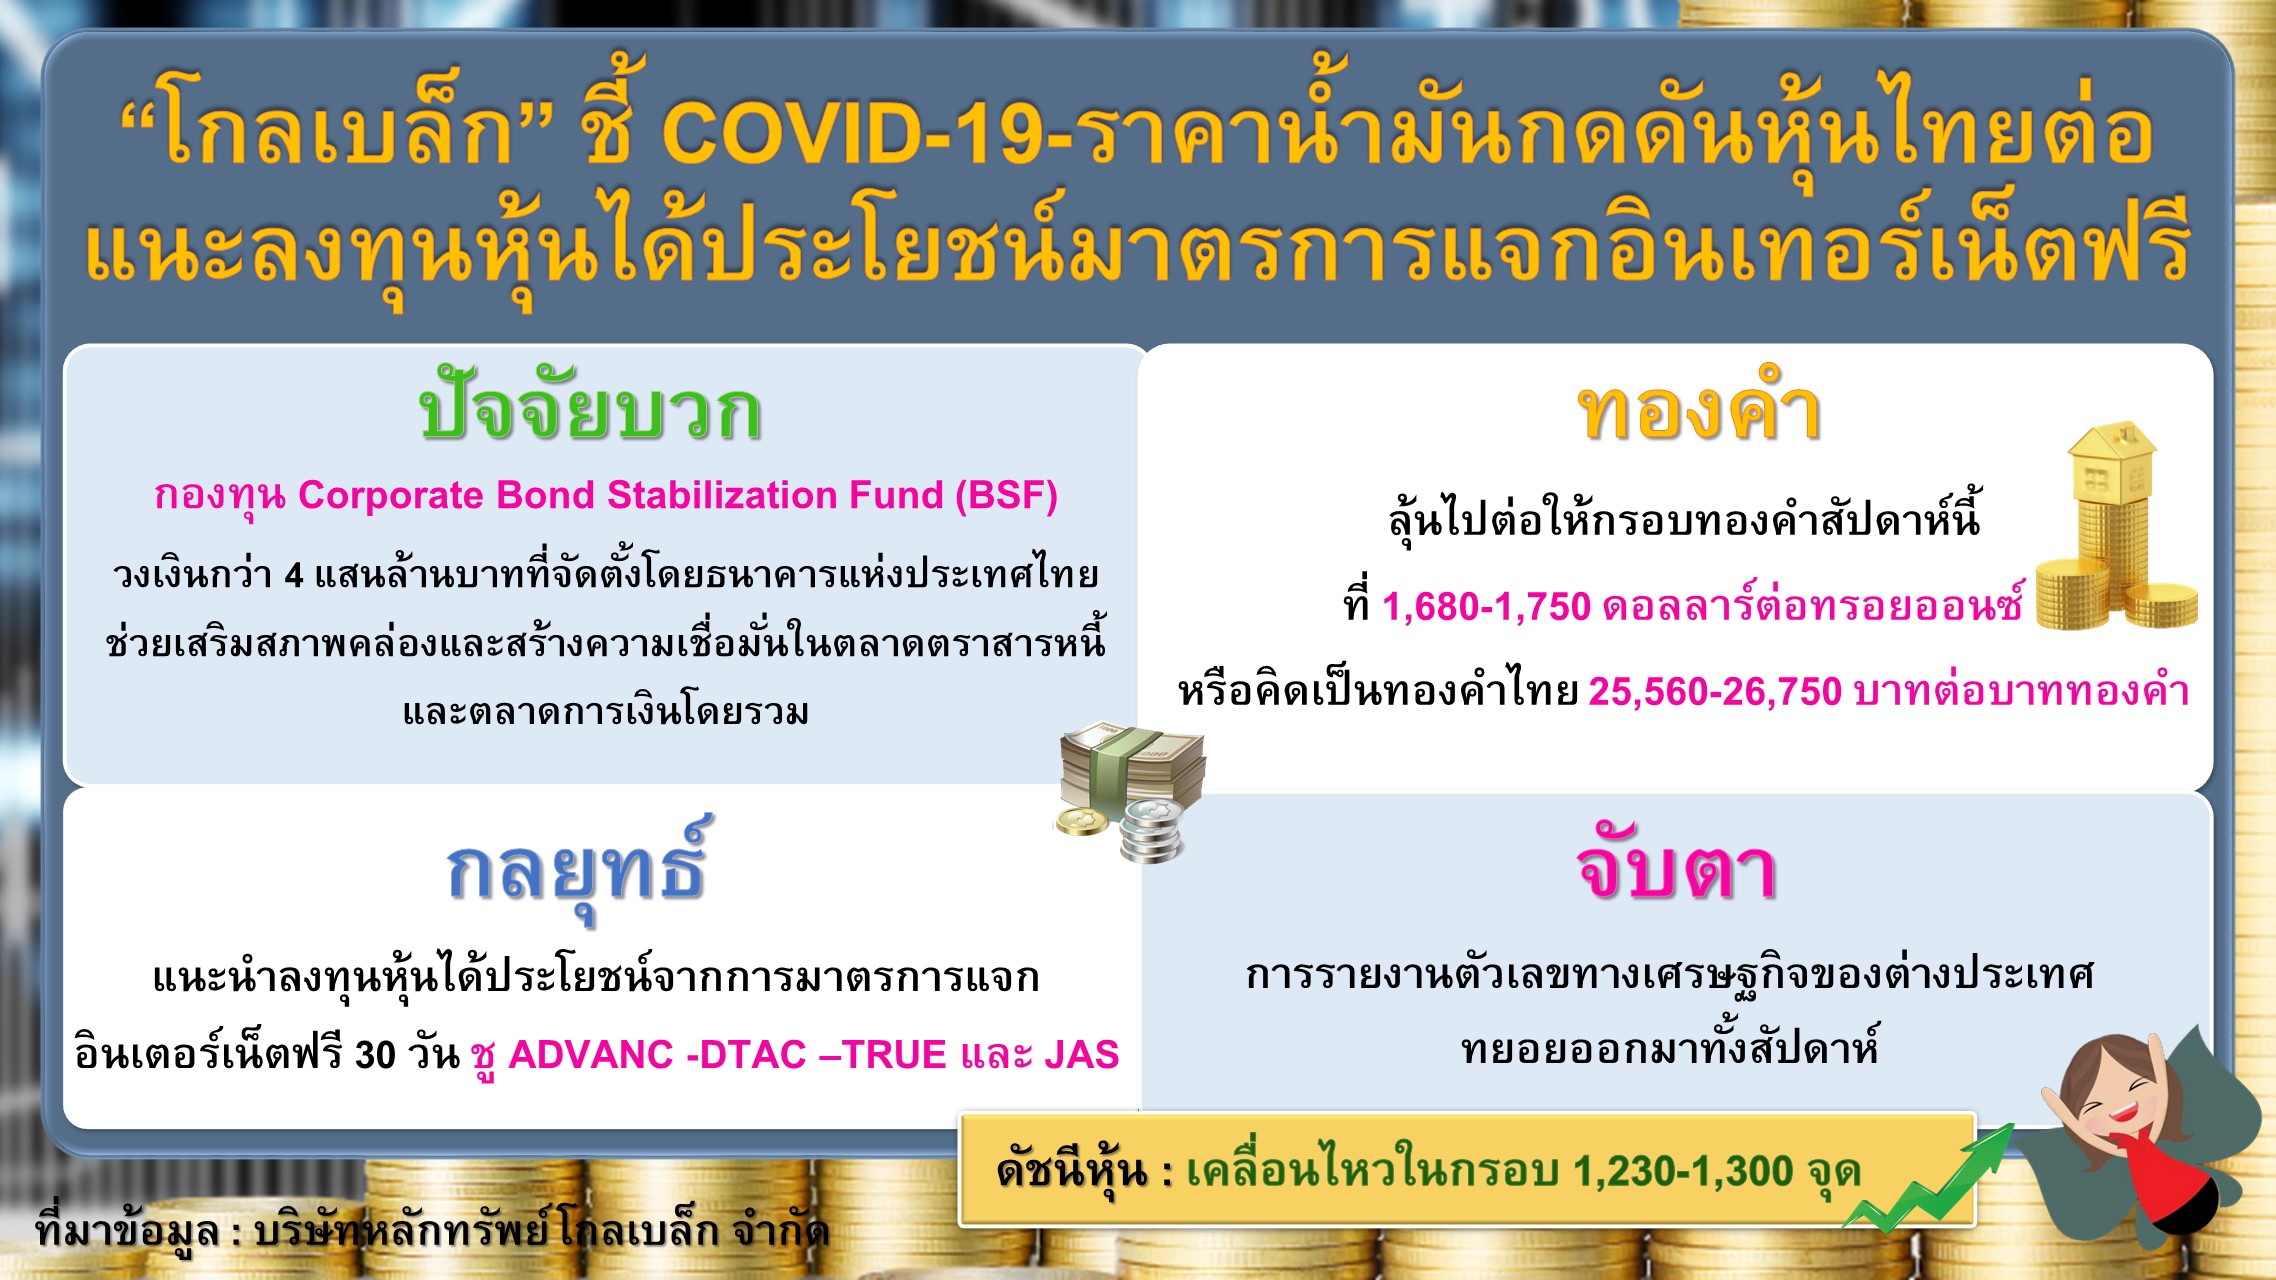 โกลเบล็ก ชี้ COVID-19-ราคาน้ำมันกดดันหุ้นไทยต่อ แนะลงทุนหุ้นได้ประโยชน์มาตรการแจกอินเทอร์เน็ตฟรี